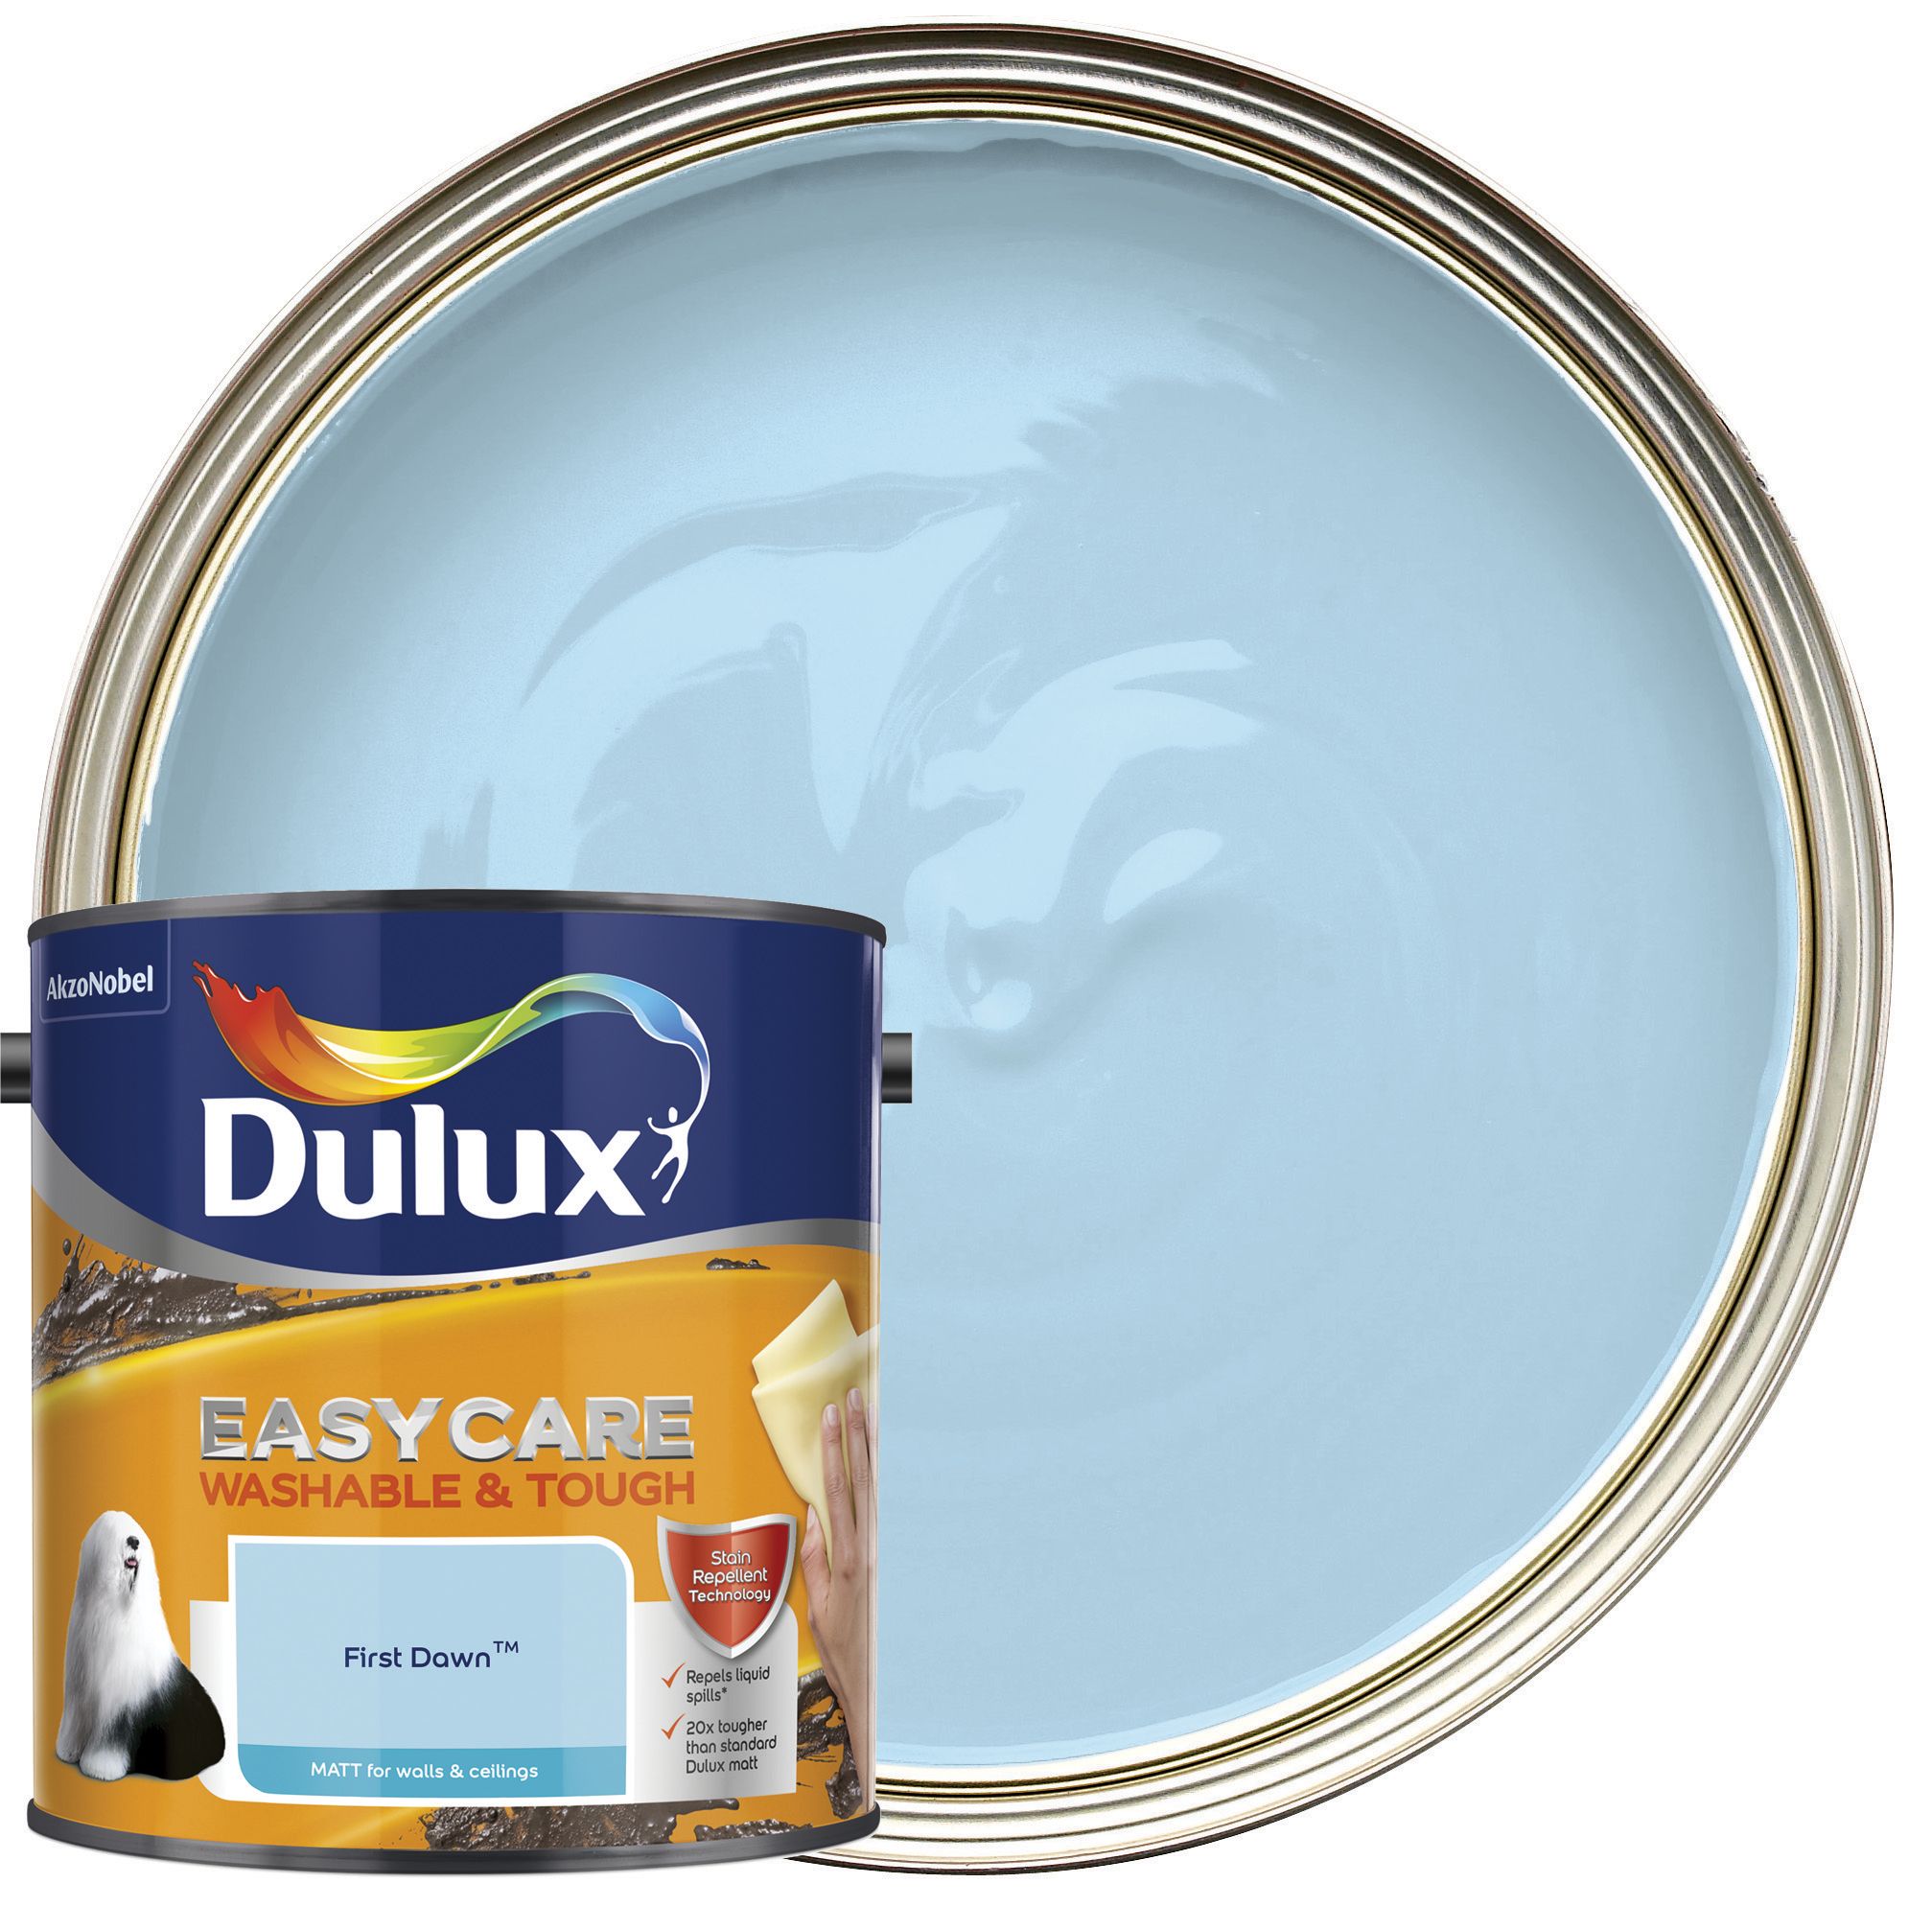 Dulux Easycare Washable & Tough Matt Emulsion Paint - First Dawn - 2.5L